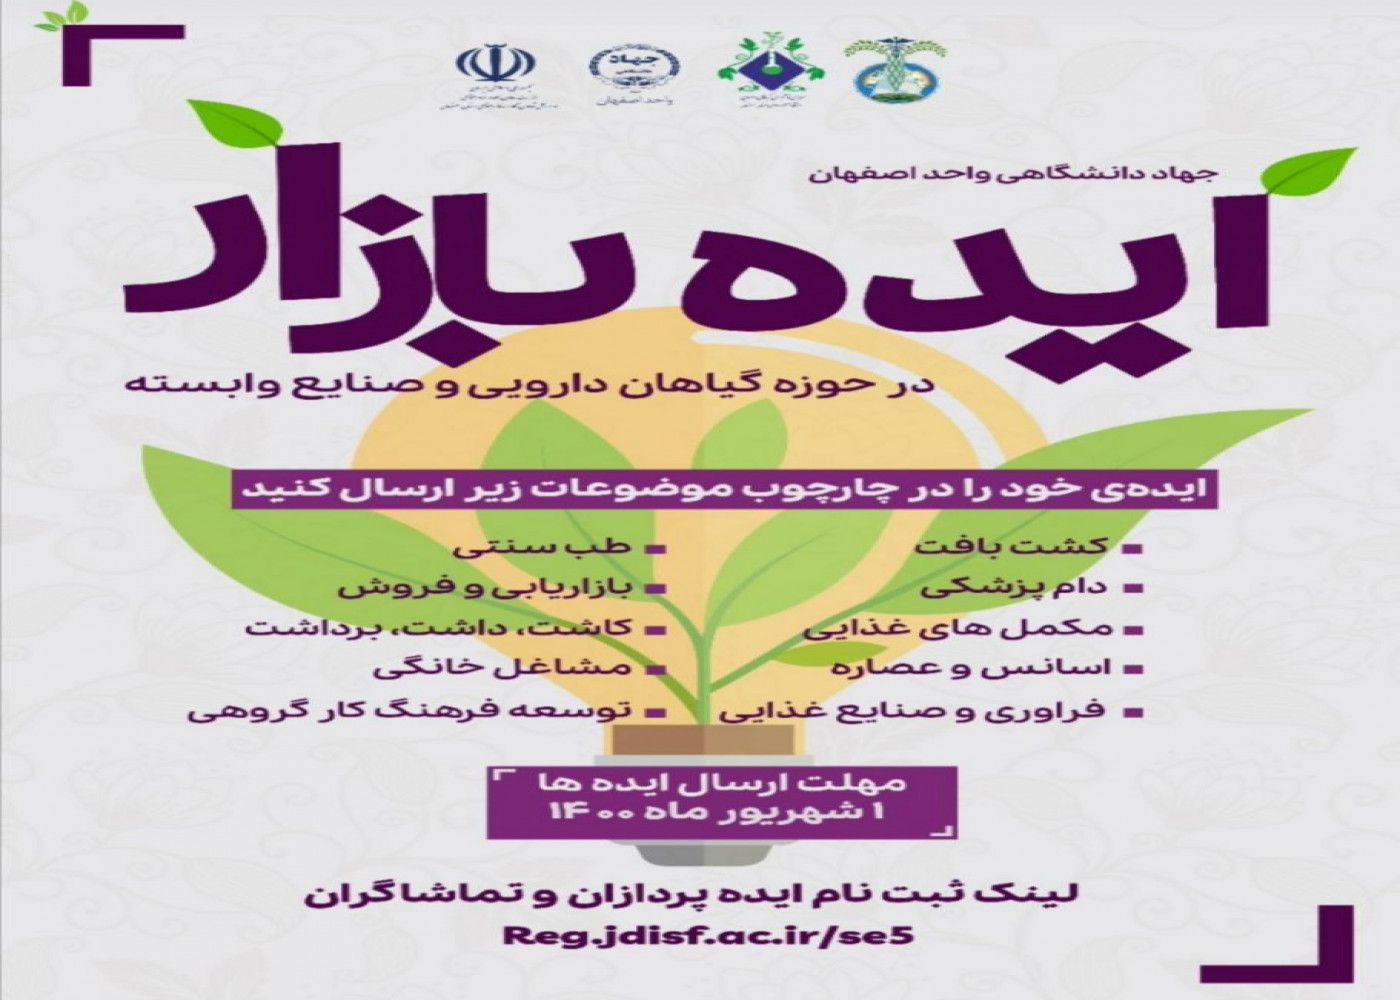 برگزاری رویداد کارافرینی ایده بازار در حوزه گیاهان دارویی توسط جهاد دانشگاهی واحد اصفهان